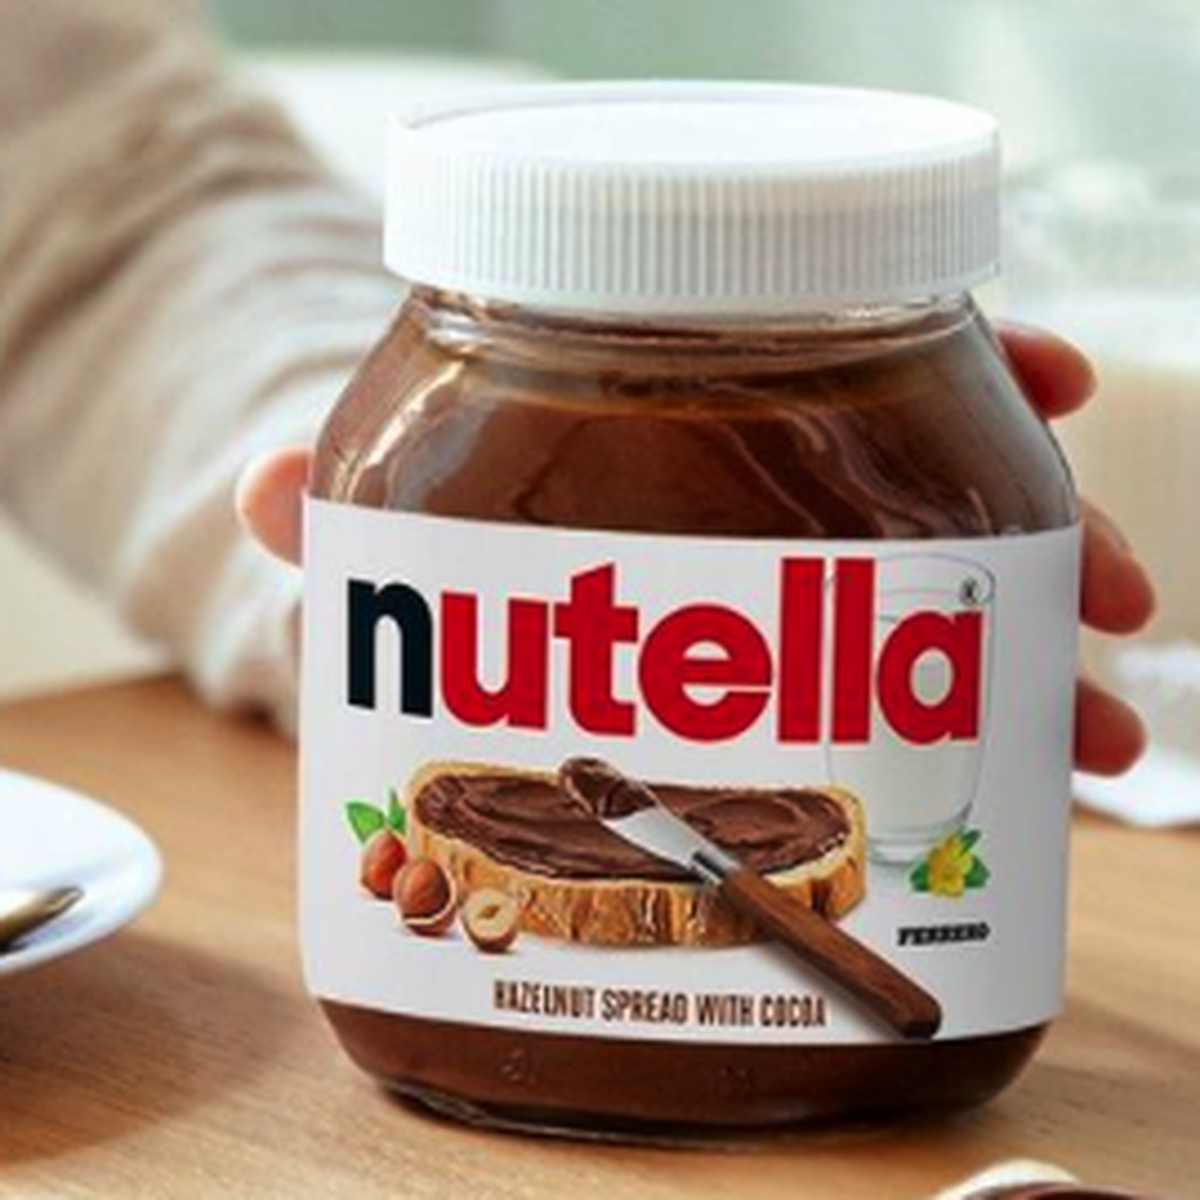 Buy Nutella - Best Prices in Sri Lanka at